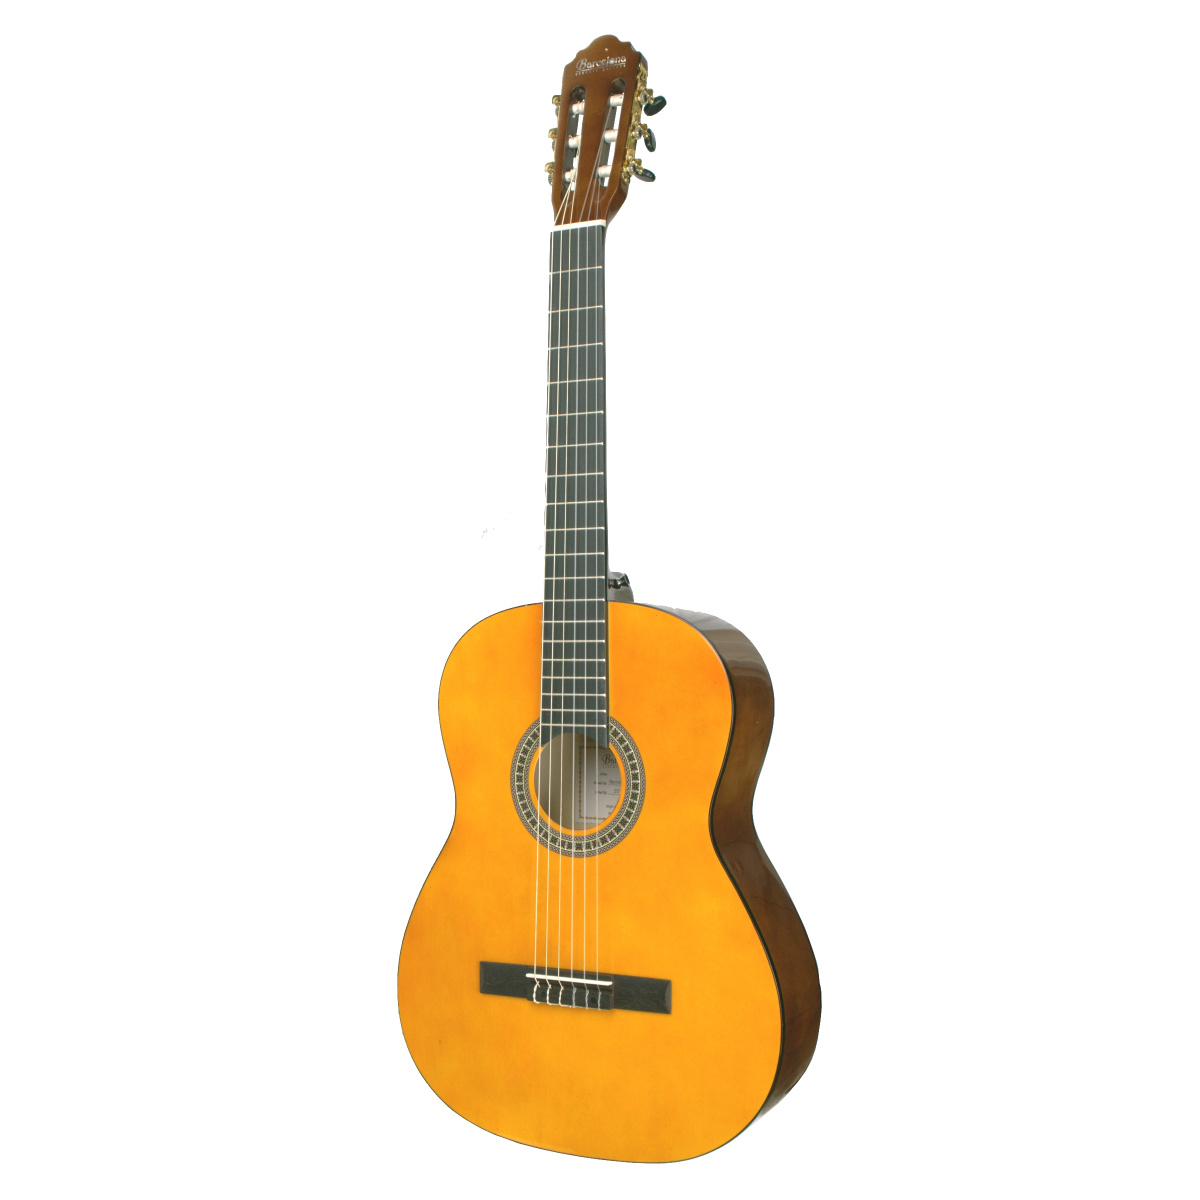 BARCELONA CG6 4/4 - классическая гитара, размер 4/4, анкер купить в prostore.me